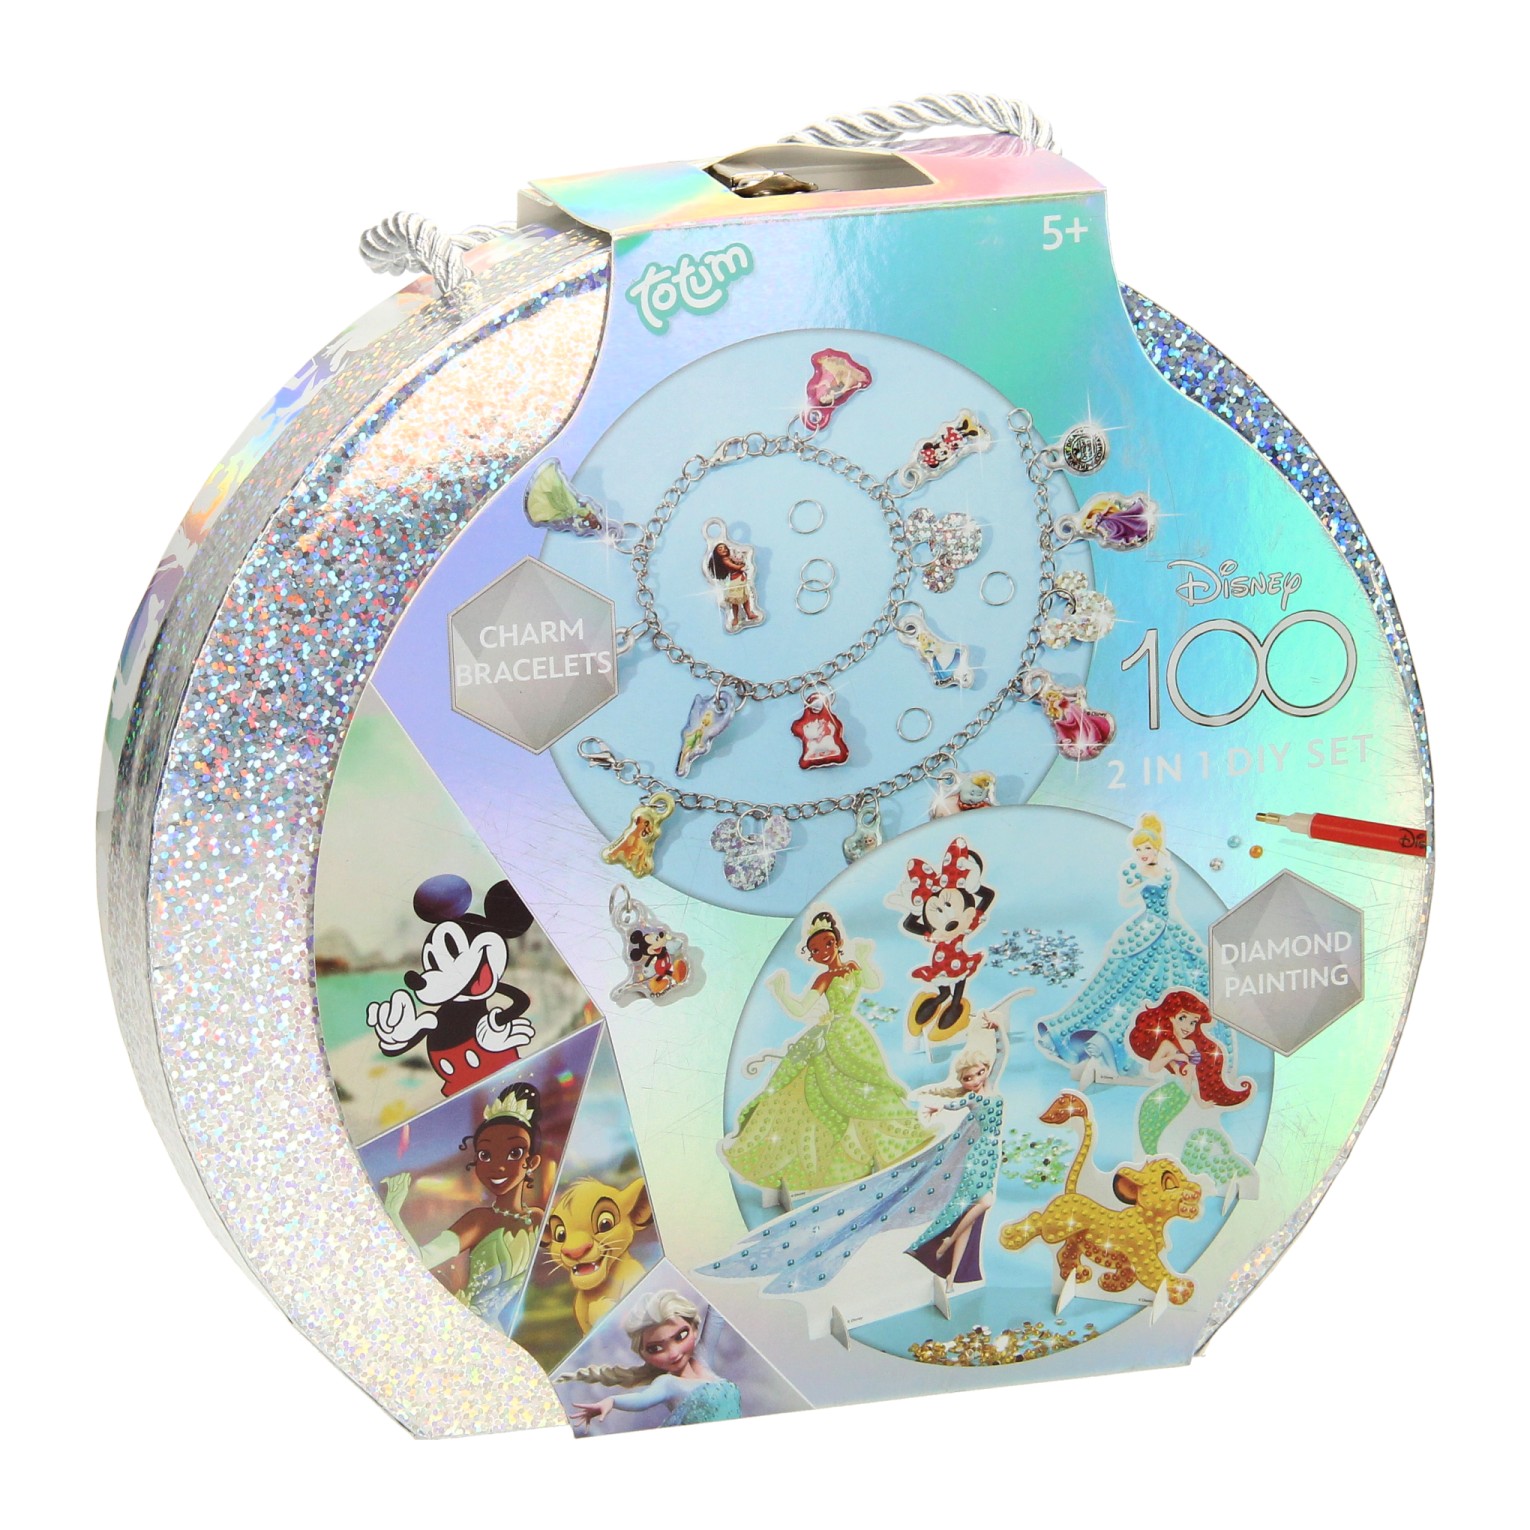 Disney 100 Craft Valise 2en1 – Fabrication de bracelets et peinture diamant